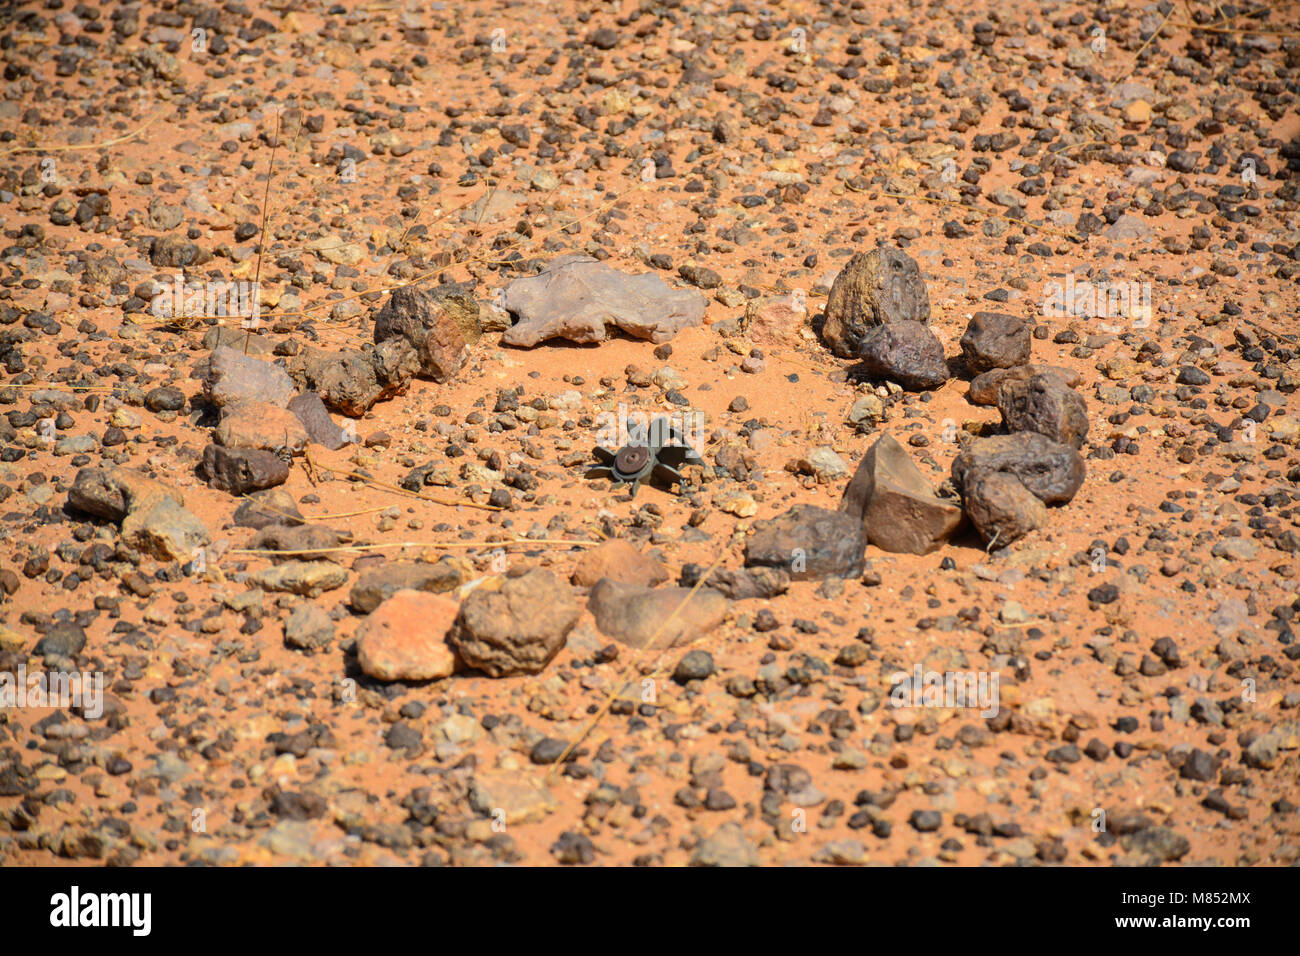 Les mines terrestres au Sahara Occidental Banque D'Images